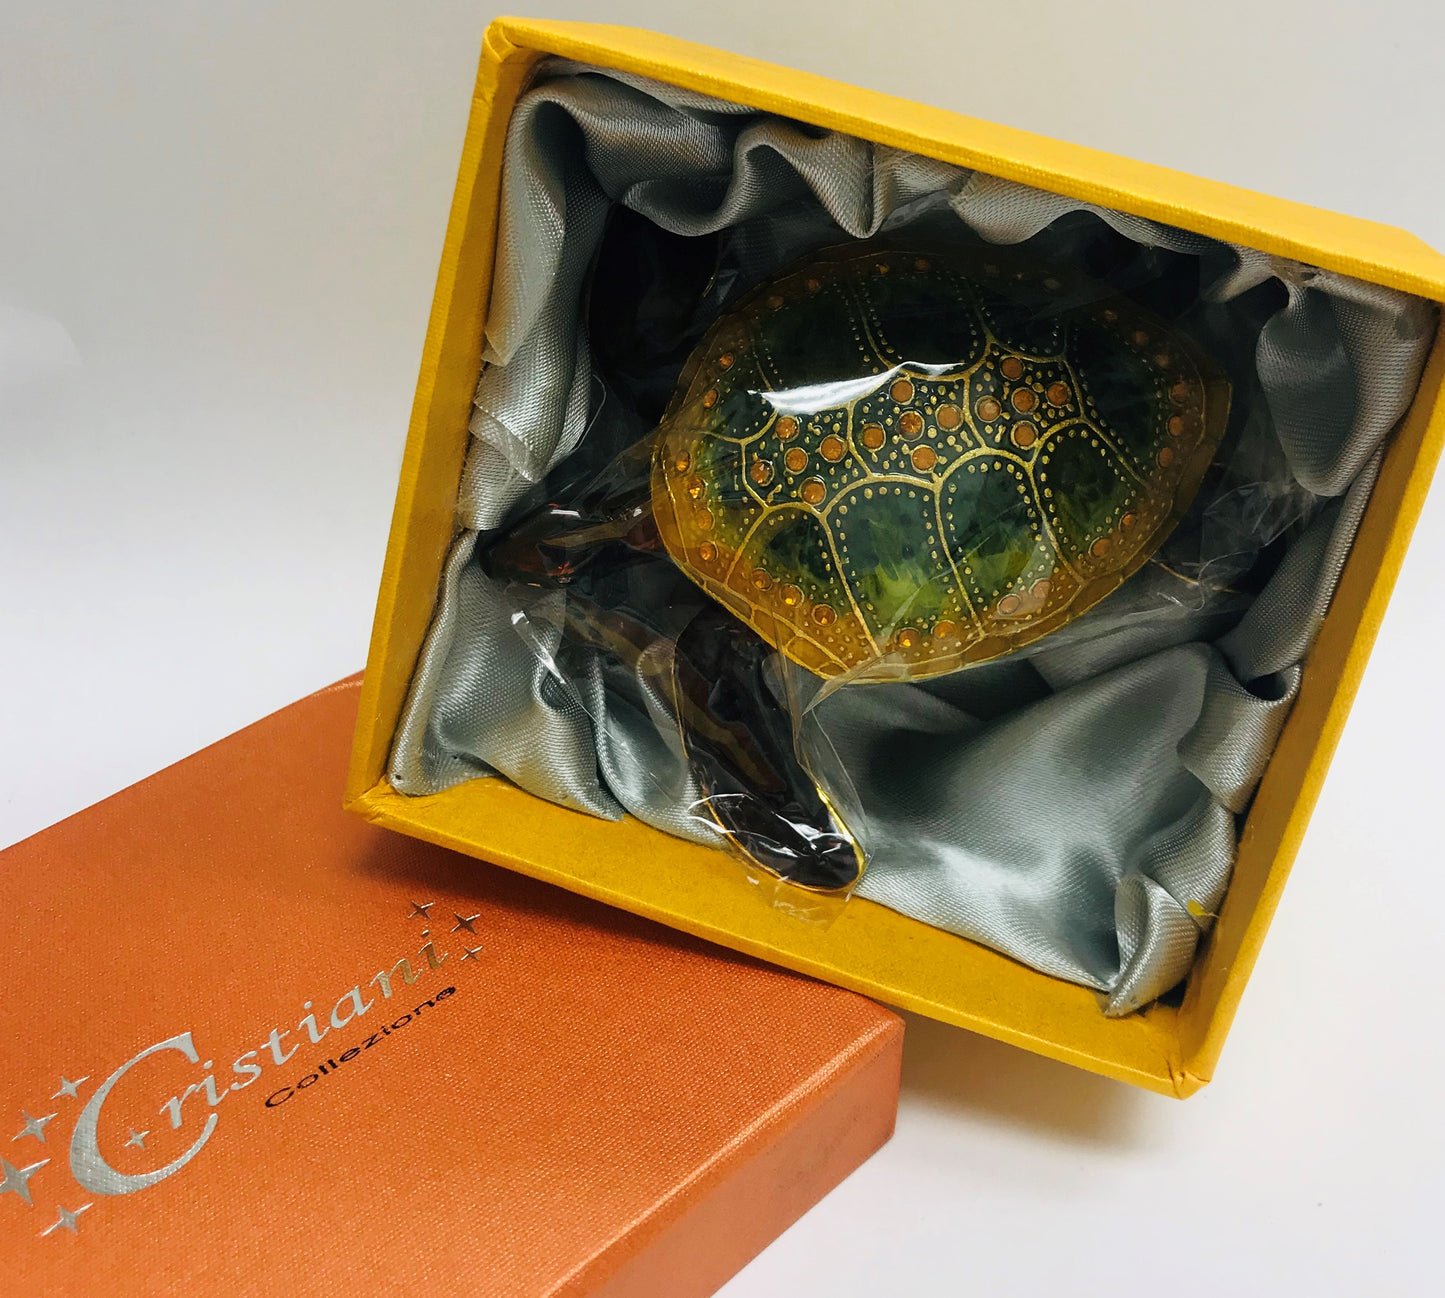 Cristiani Collezione Turtle Trinket Box.